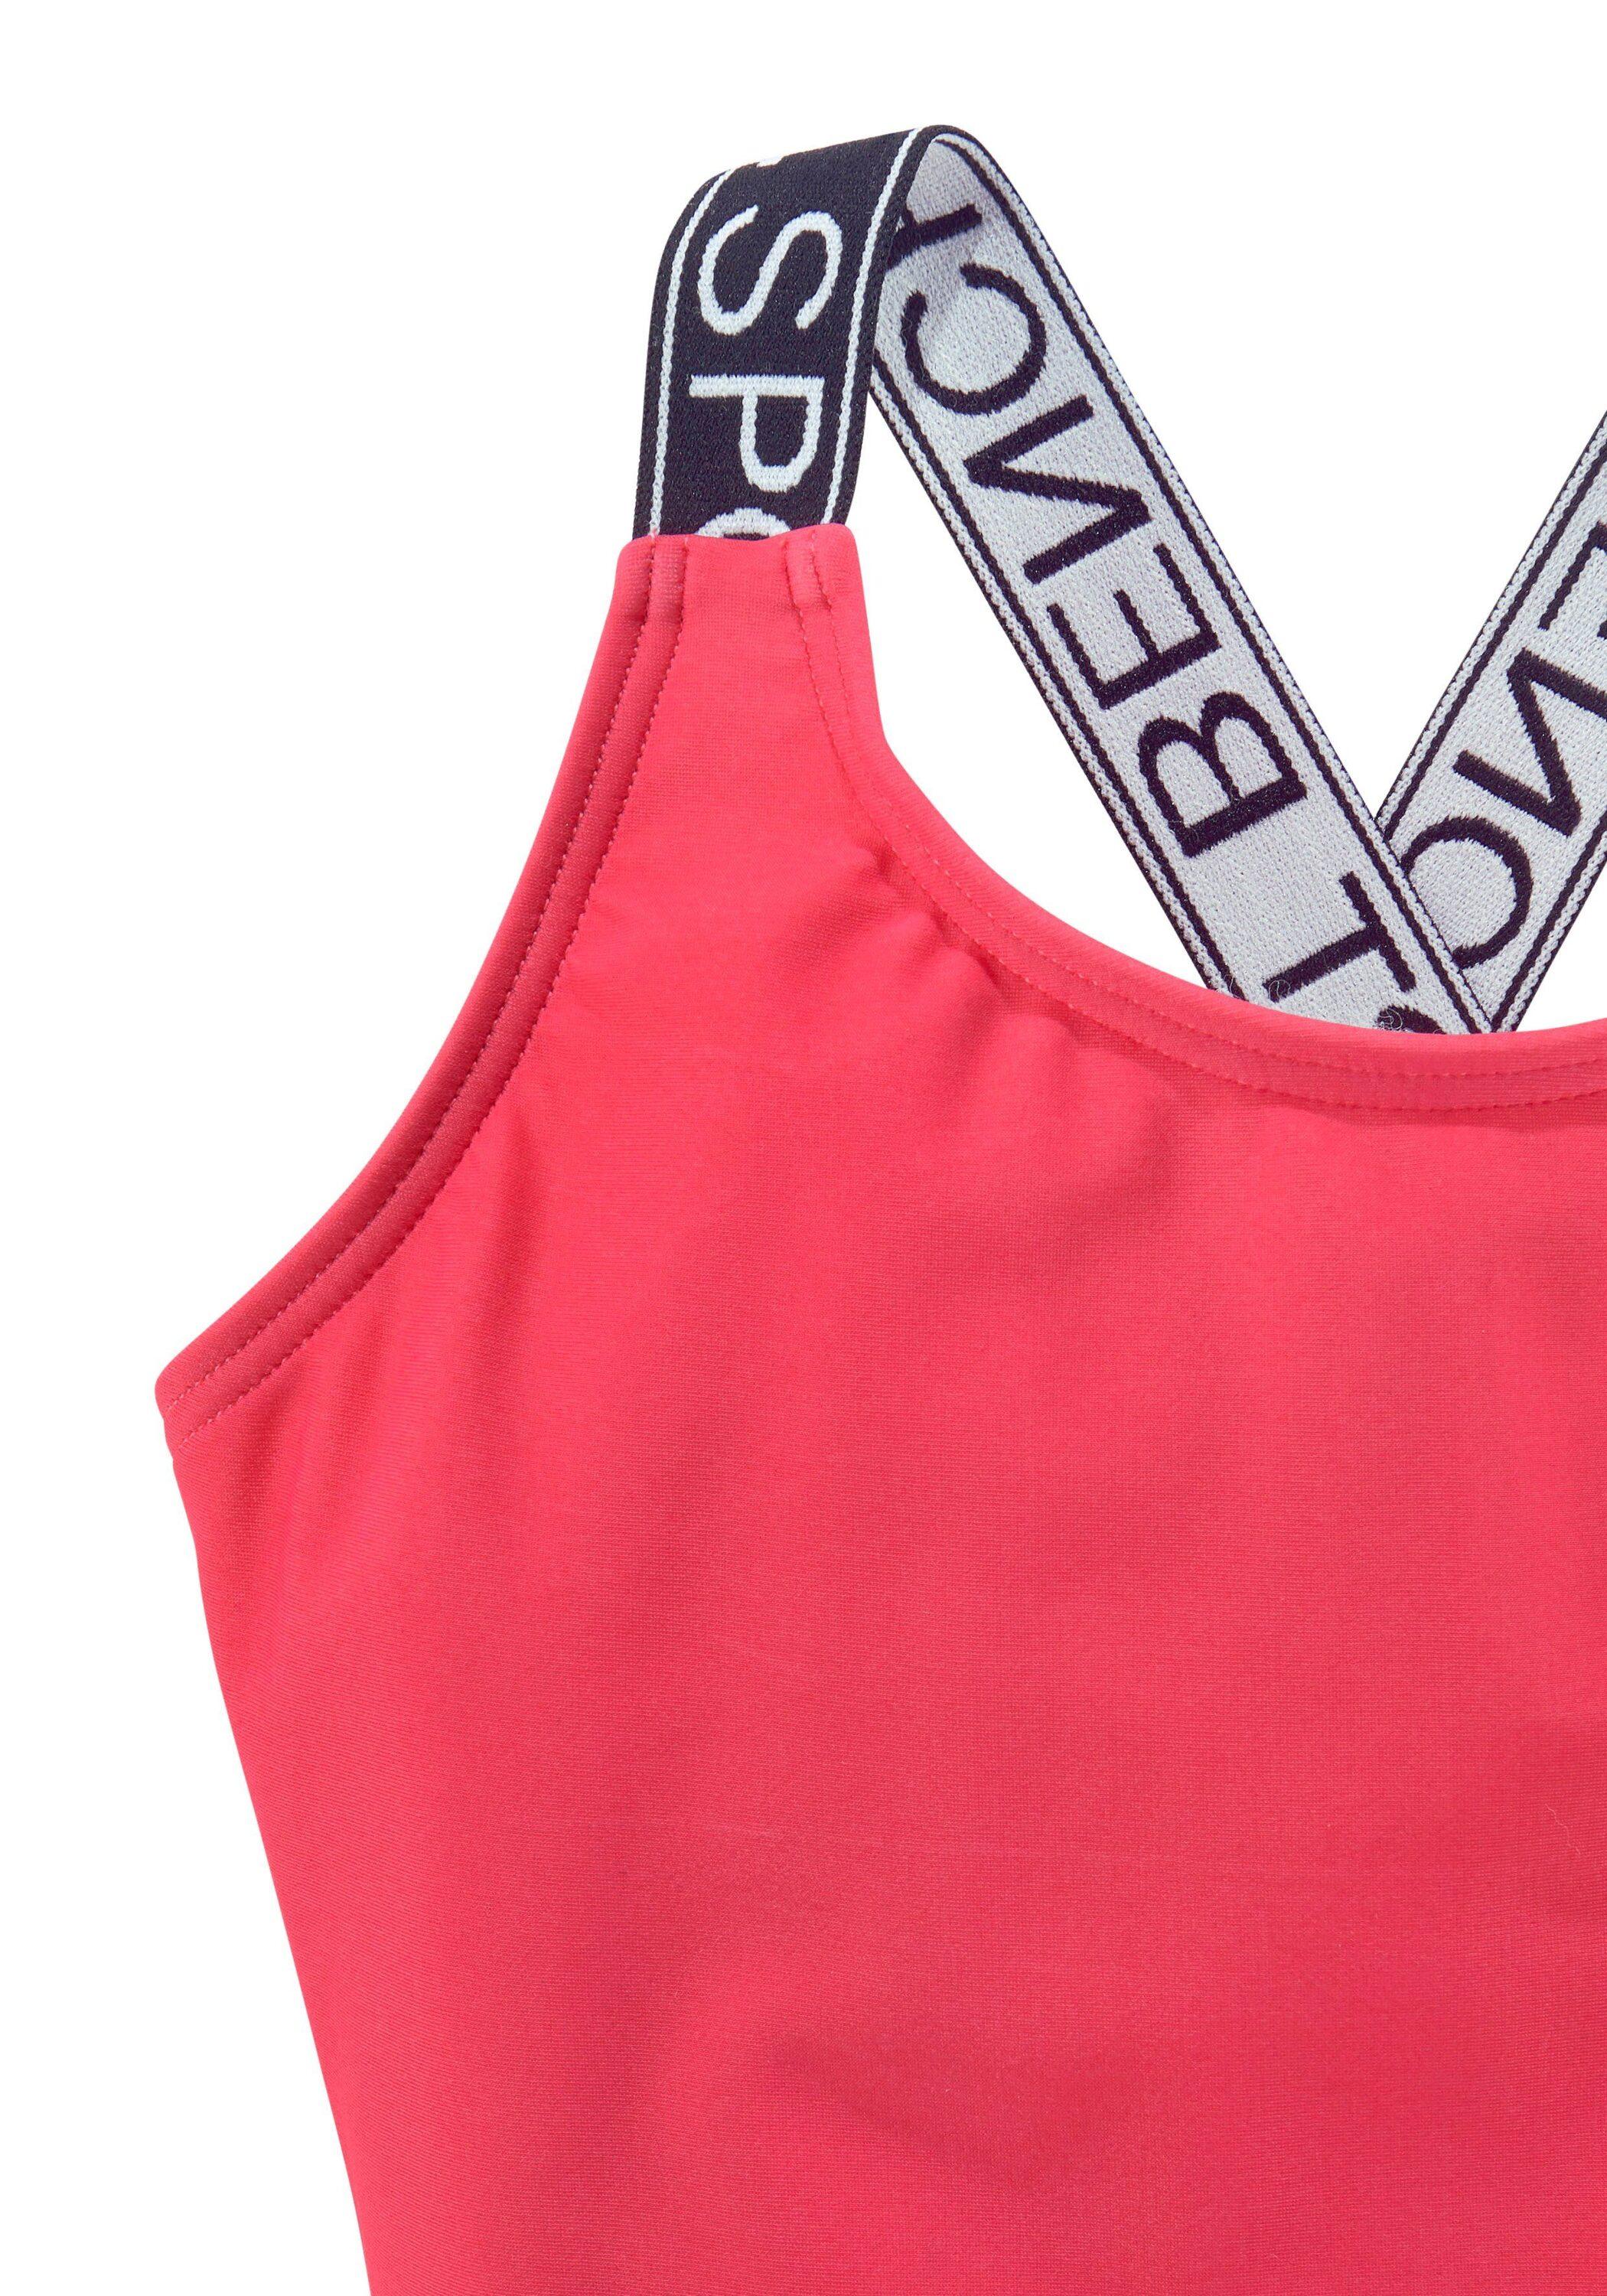 Bench Badeanzug Damen von SportScheck Shop im Online kaufen pink